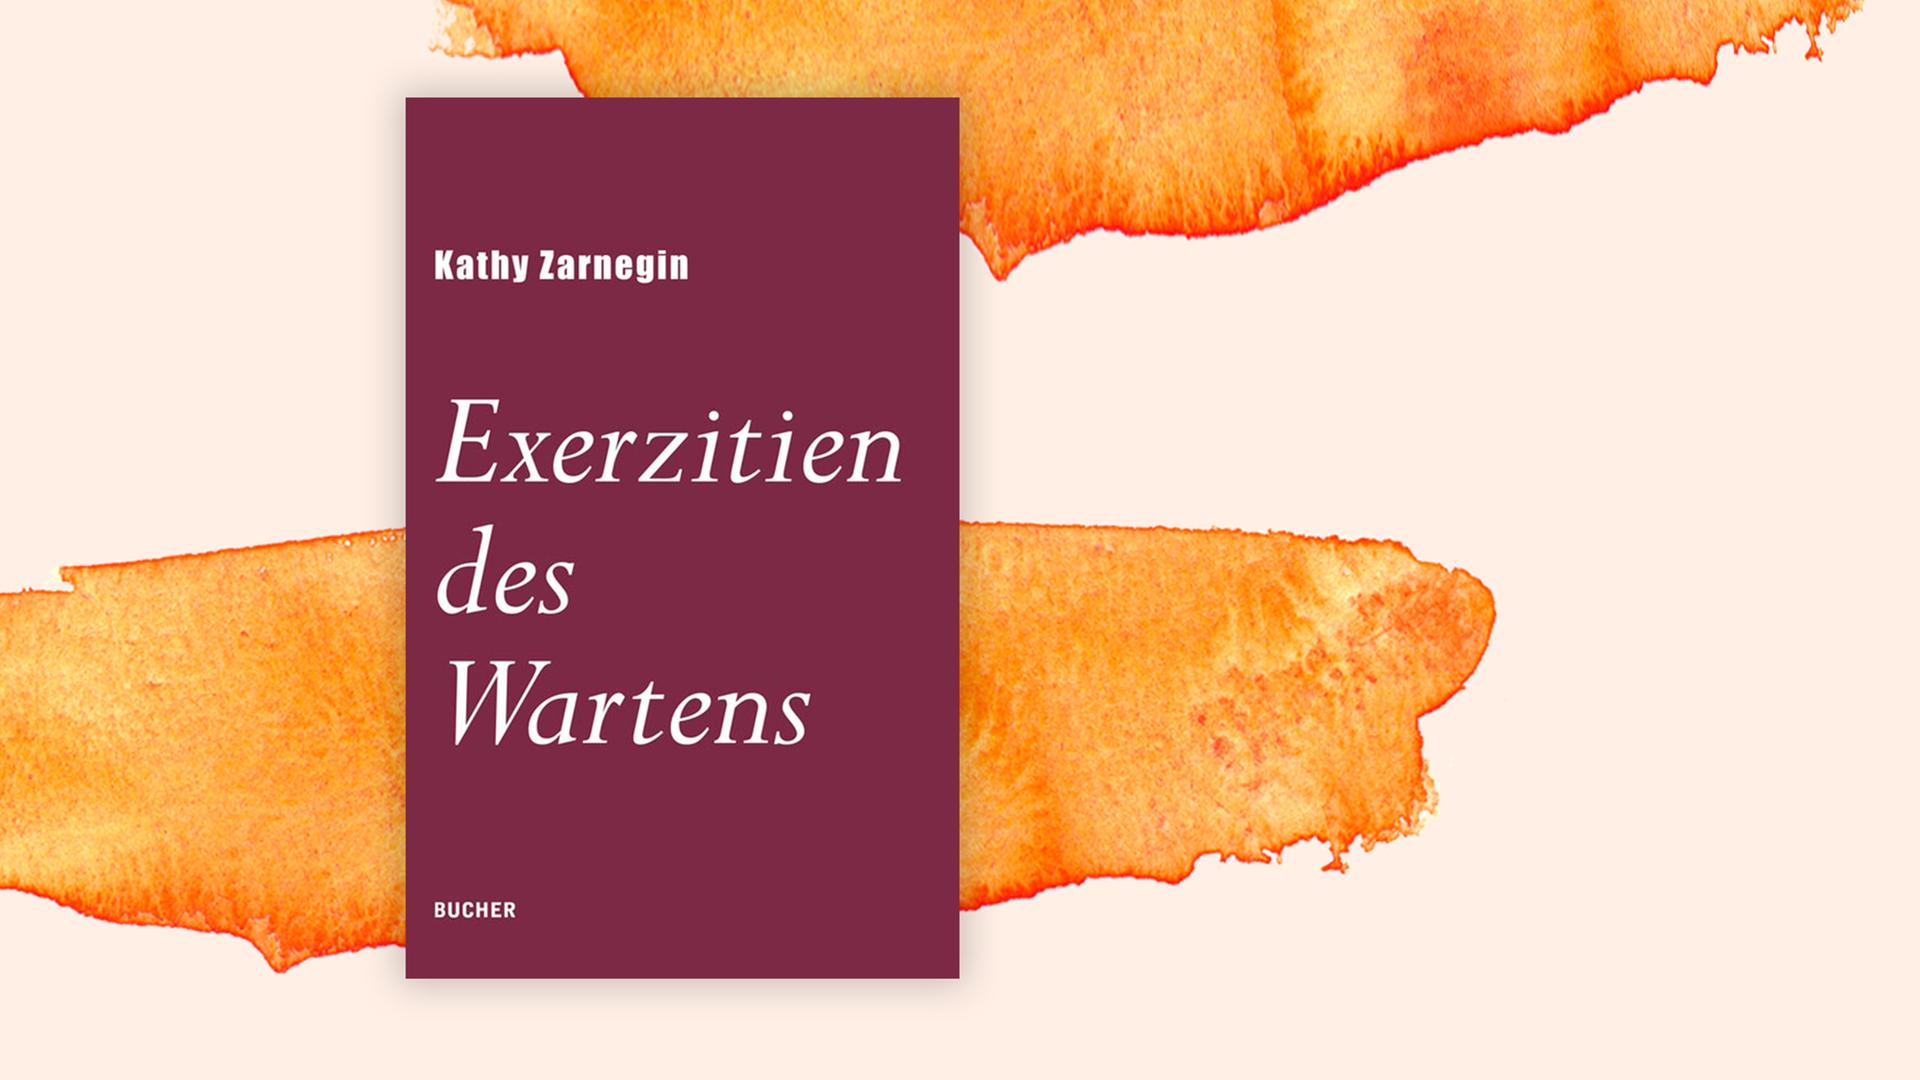 Buchcover zu Kathy Zarnegins "Exerzitien des Wartens".